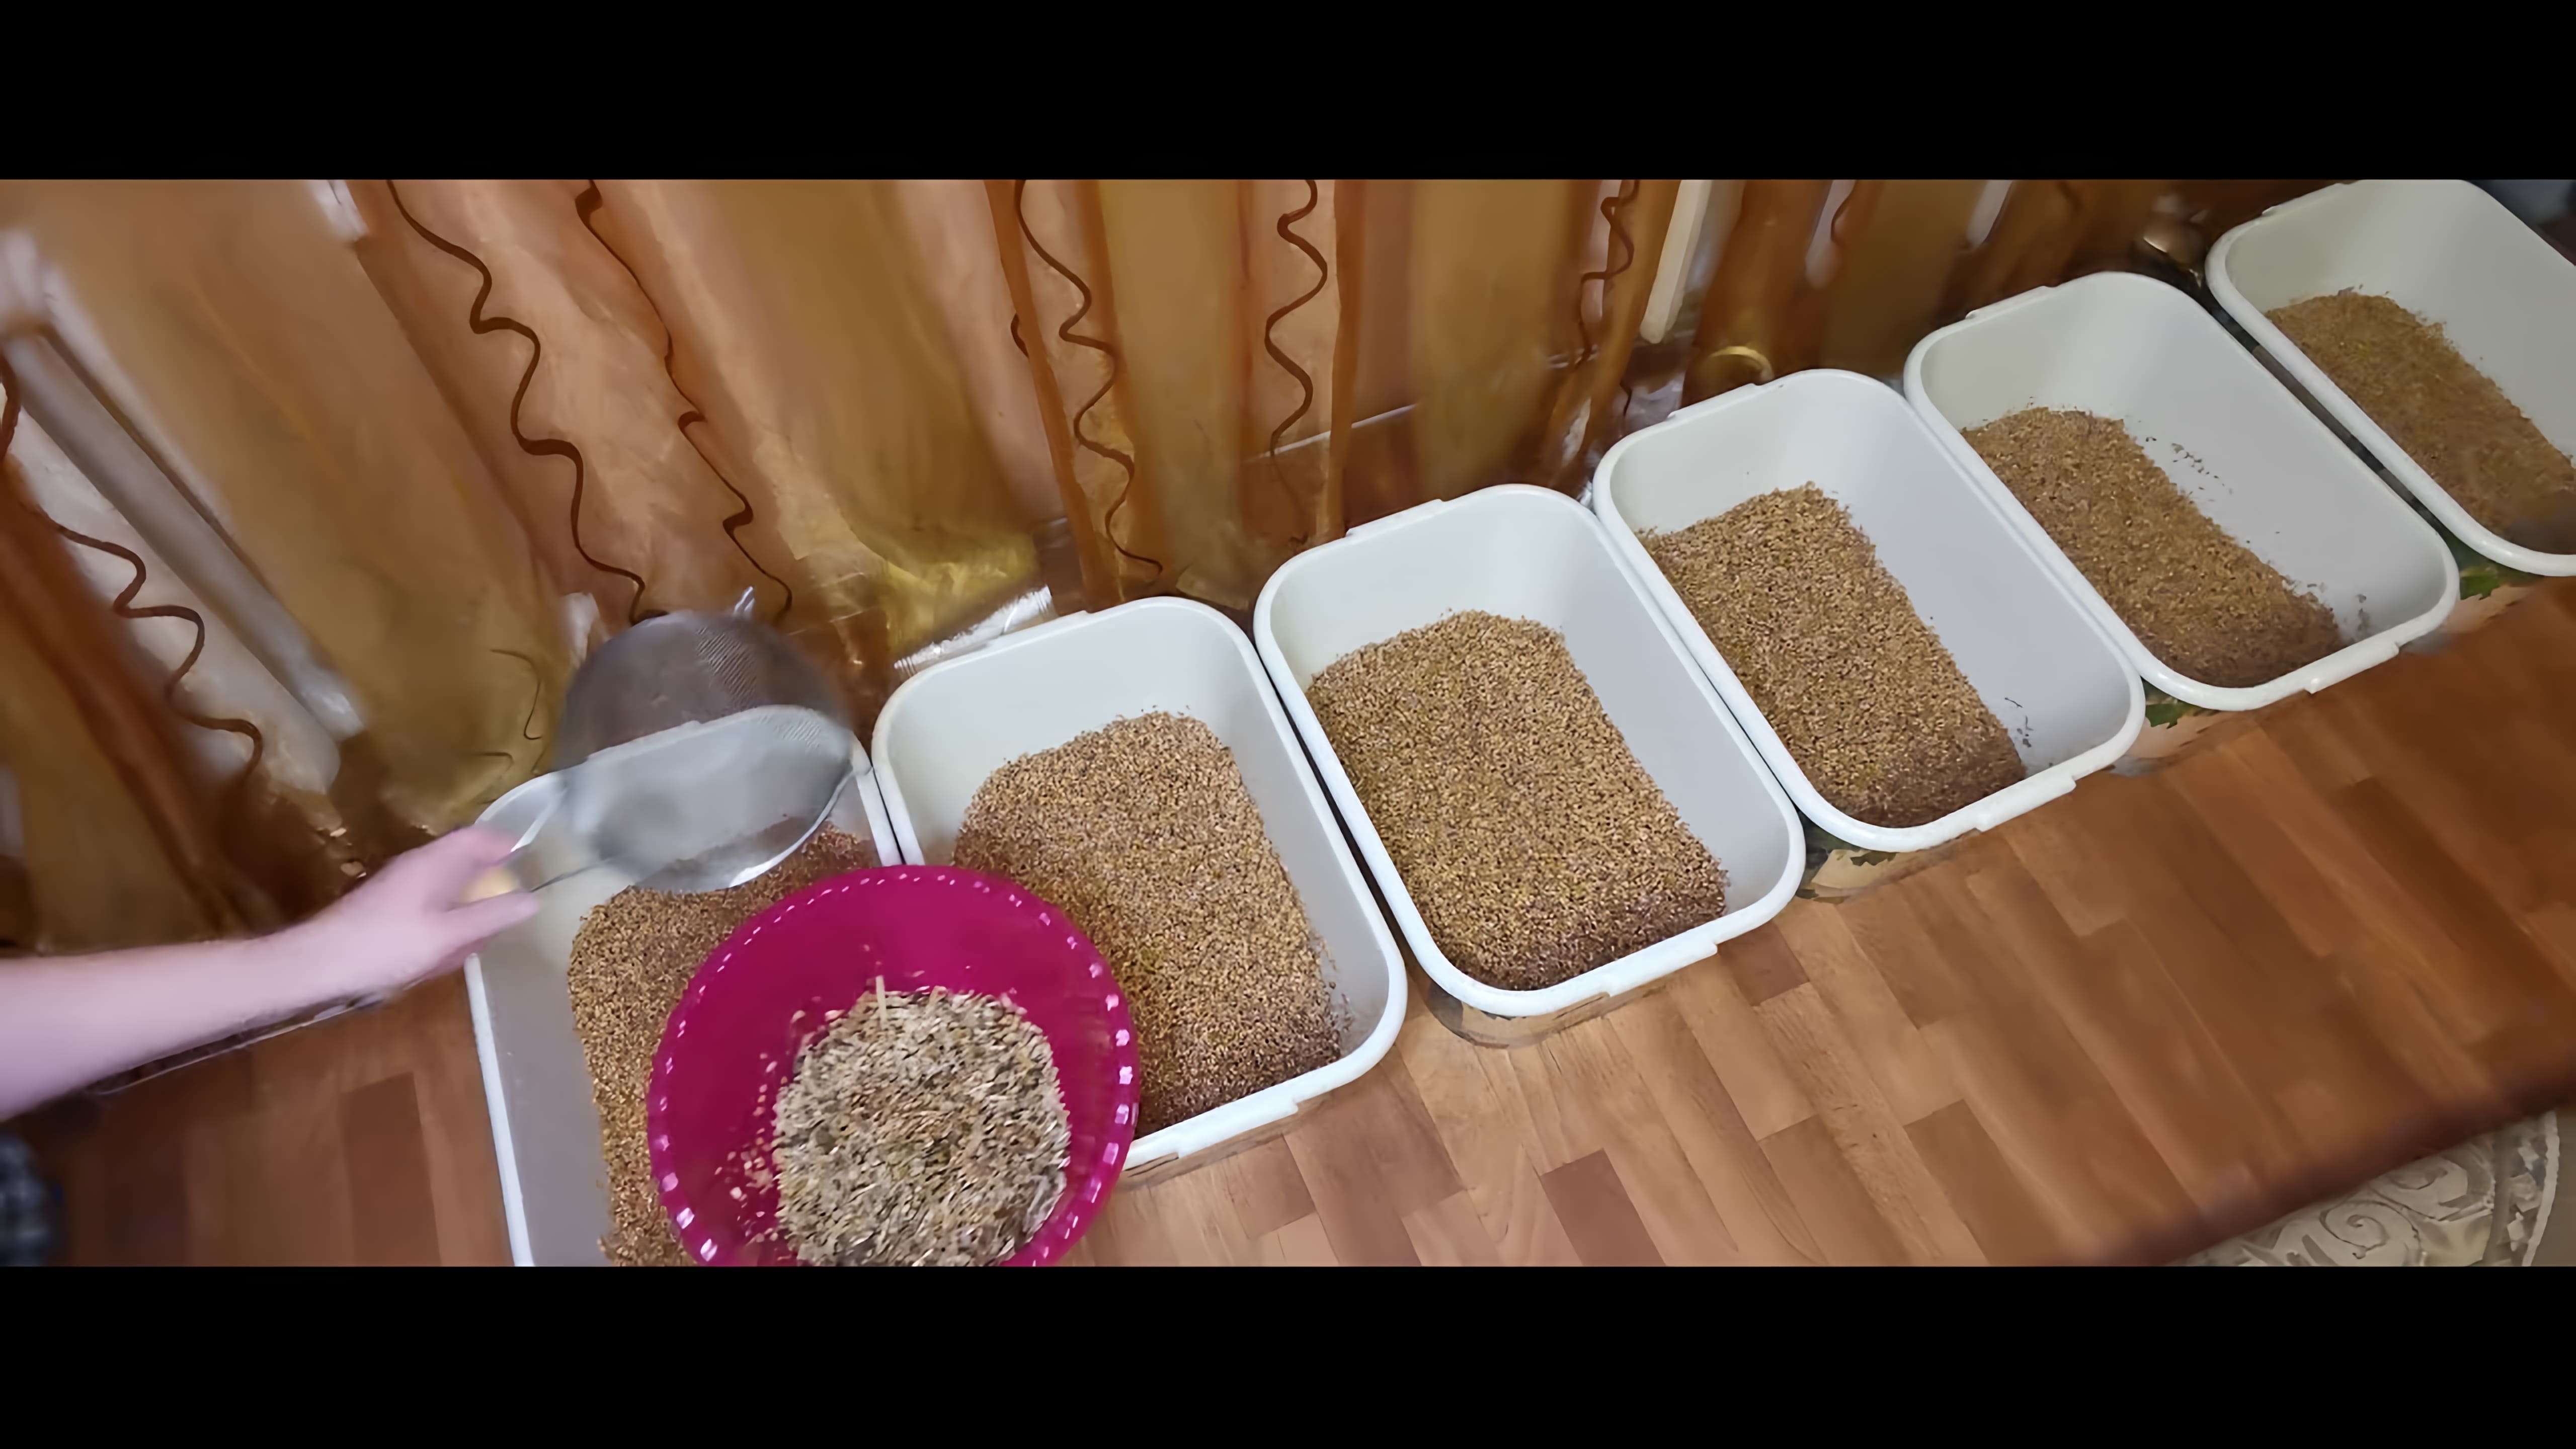 В данном видео демонстрируется рецепт приготовления браги на пшенице